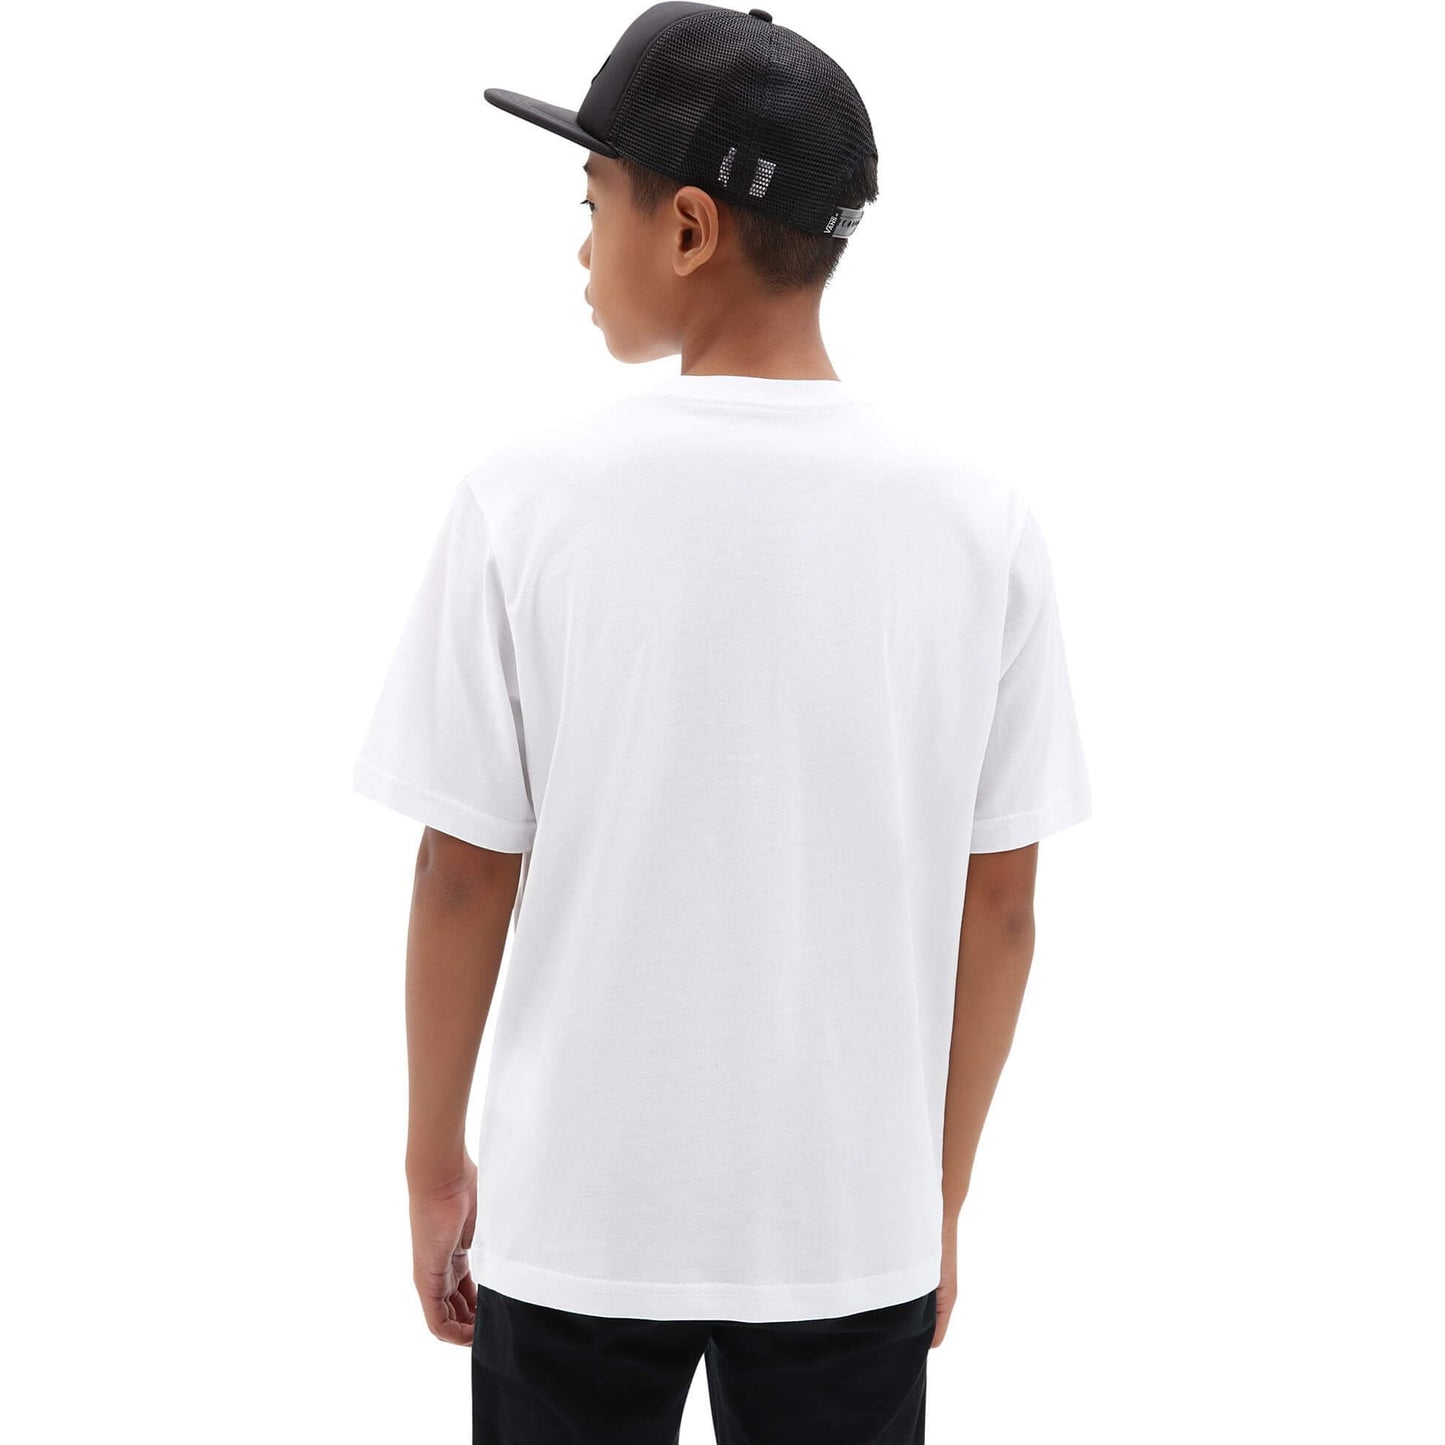 Vans Kids Otw T-Shirt (8-14+ Years) White-Black